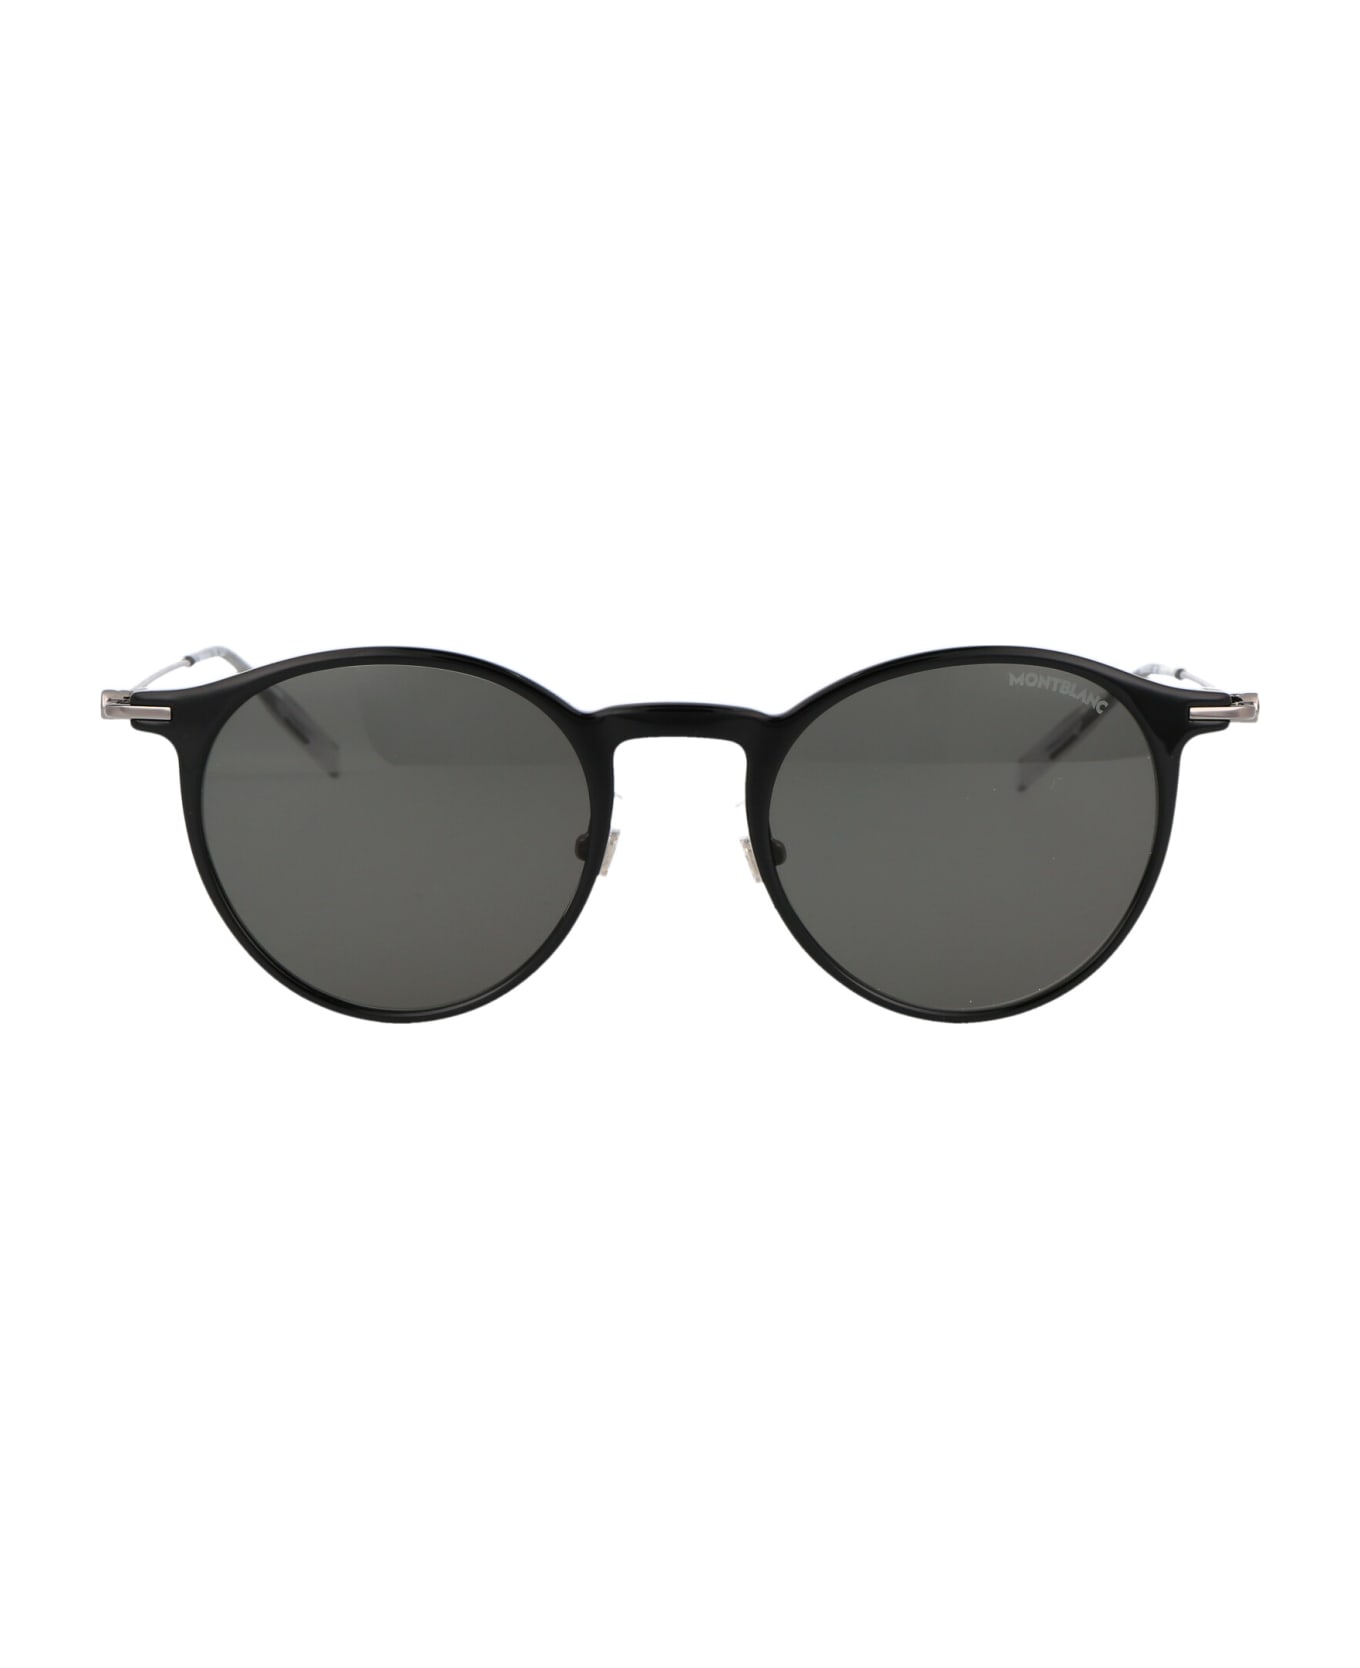 Montblanc Mb0097s Sunglasses - 005 BLACK RUTHENIUM GREY